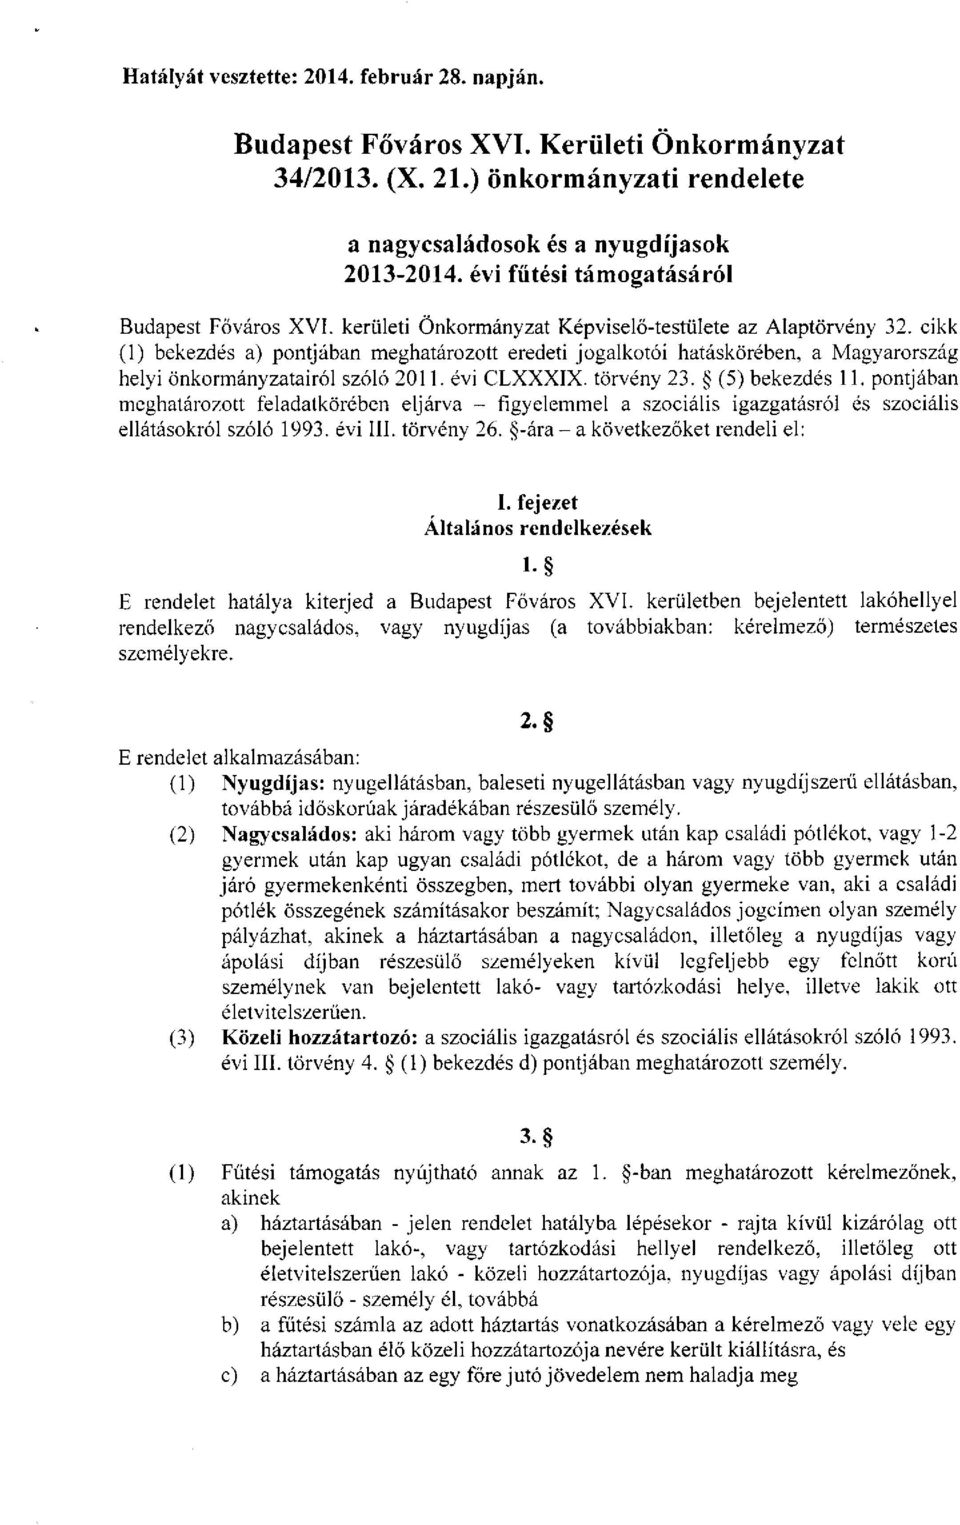 cikk (1) bekezdés a) pontjában meghatározott eredeti jogalkotói hatáskörében, a Magyarország helyi önkormányzatairól szóló 2011. évi CLXXXIX. törvény 23. (5) bekezdés 11.